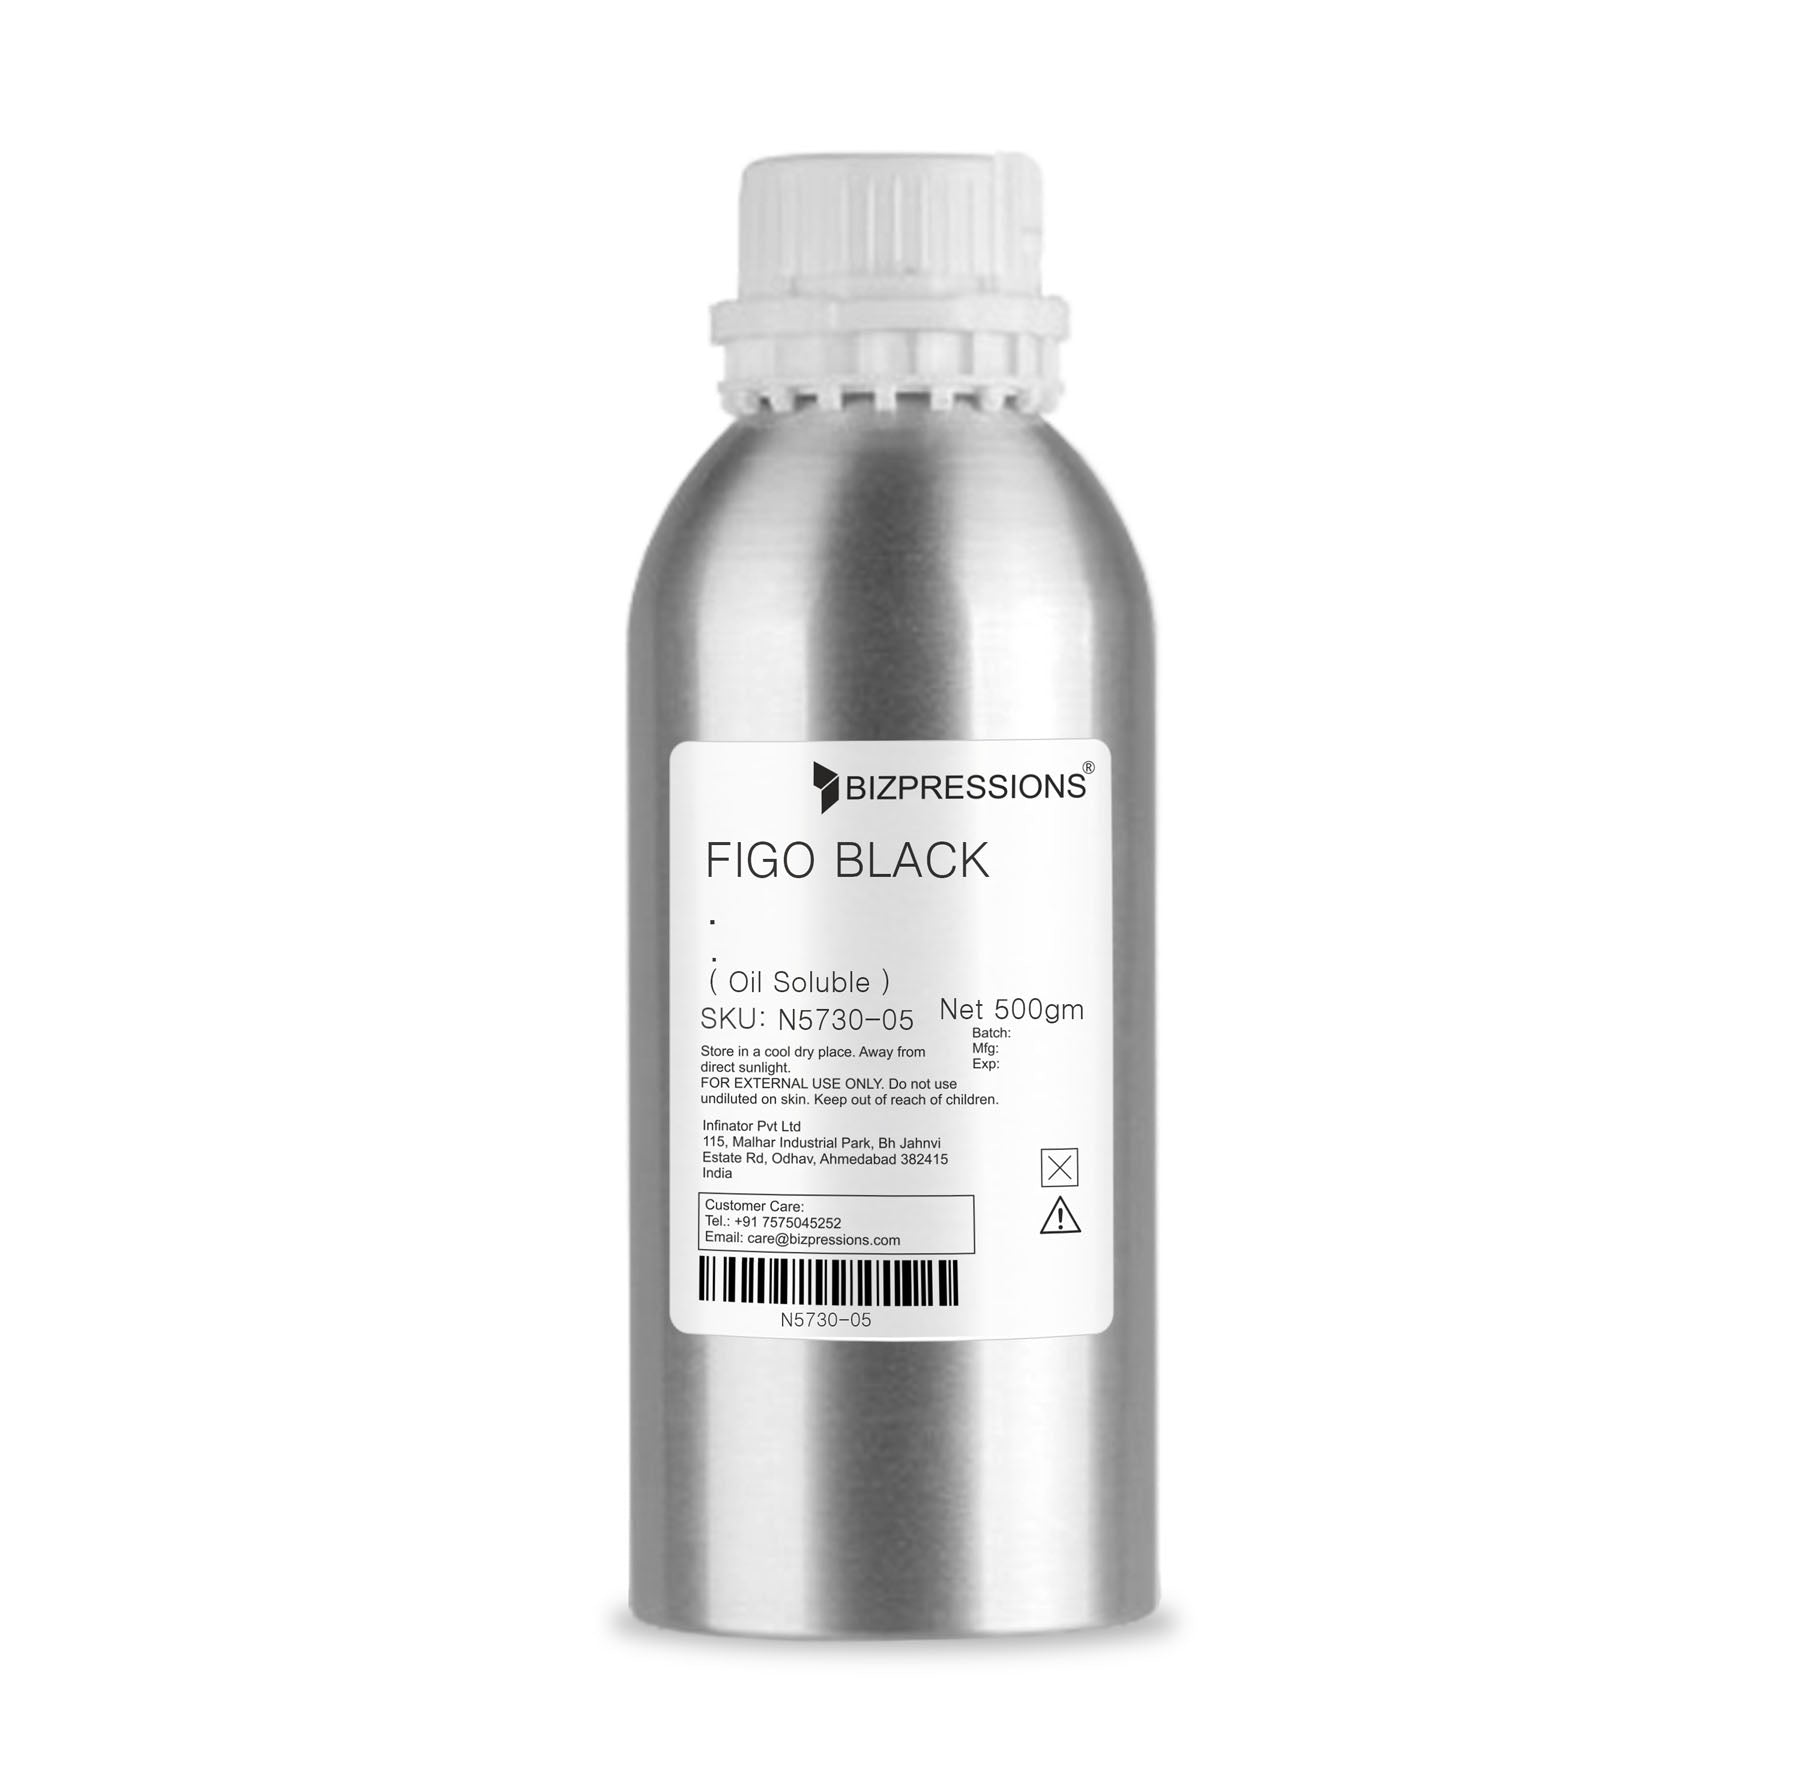 FIGO BLACK - Fragrance ( Oil Soluble ) - 500 gm